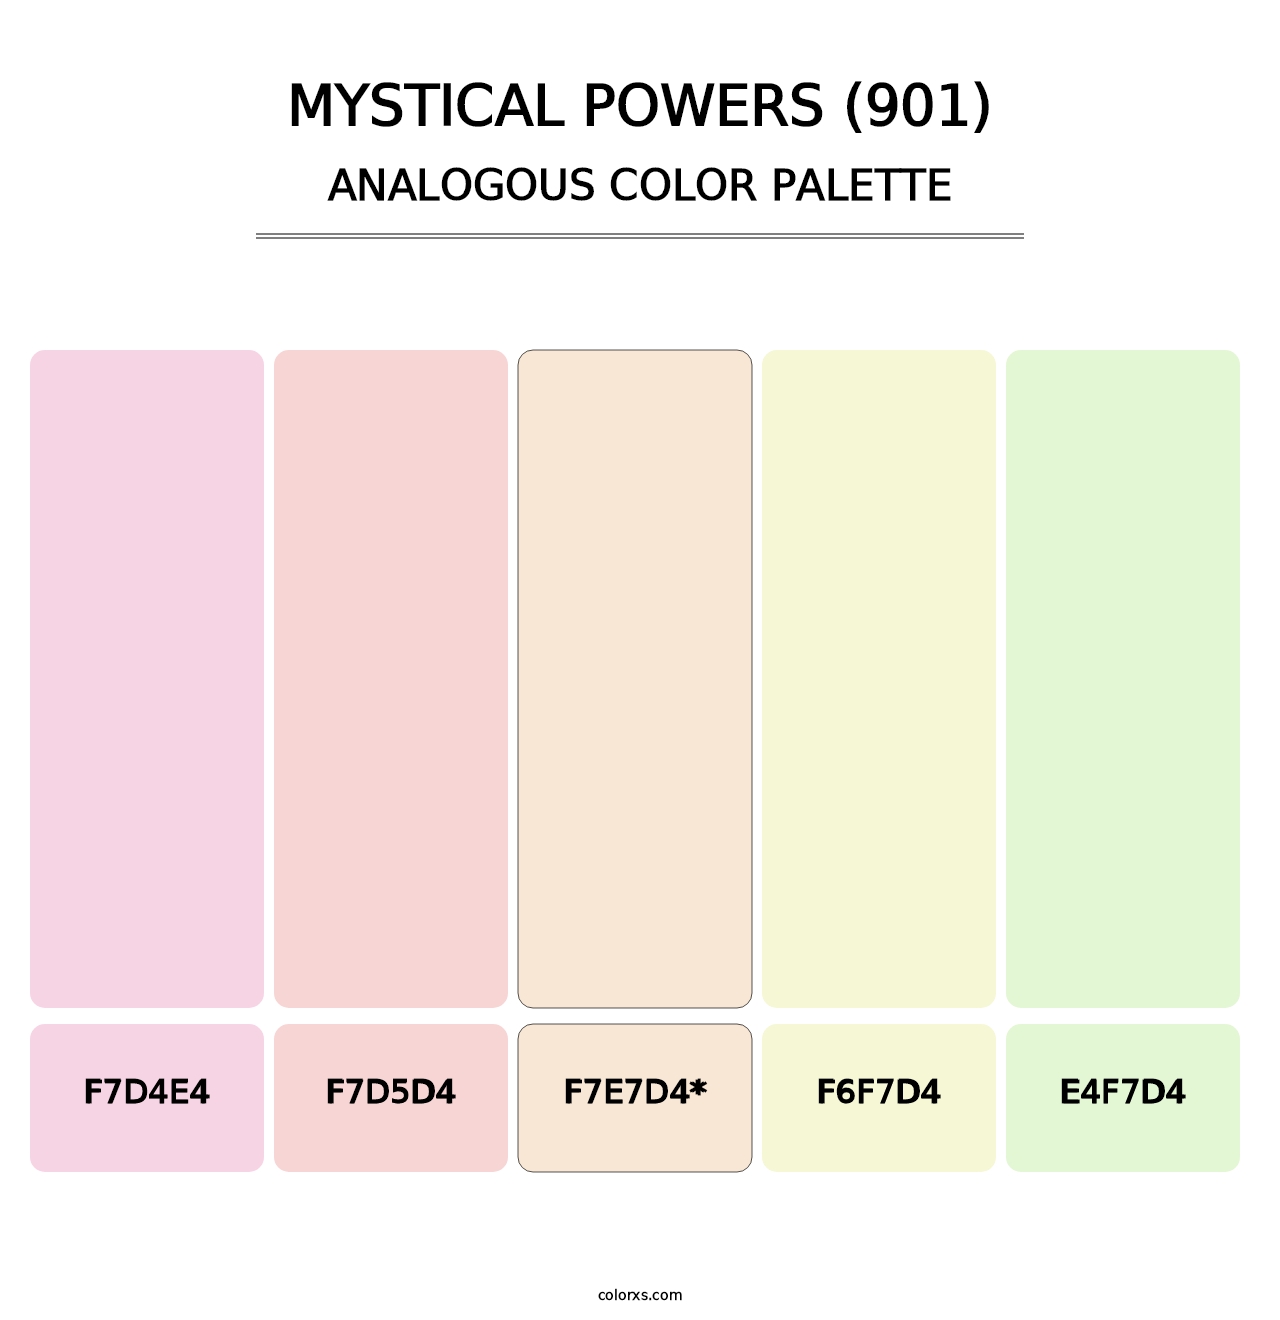 Mystical Powers (901) - Analogous Color Palette